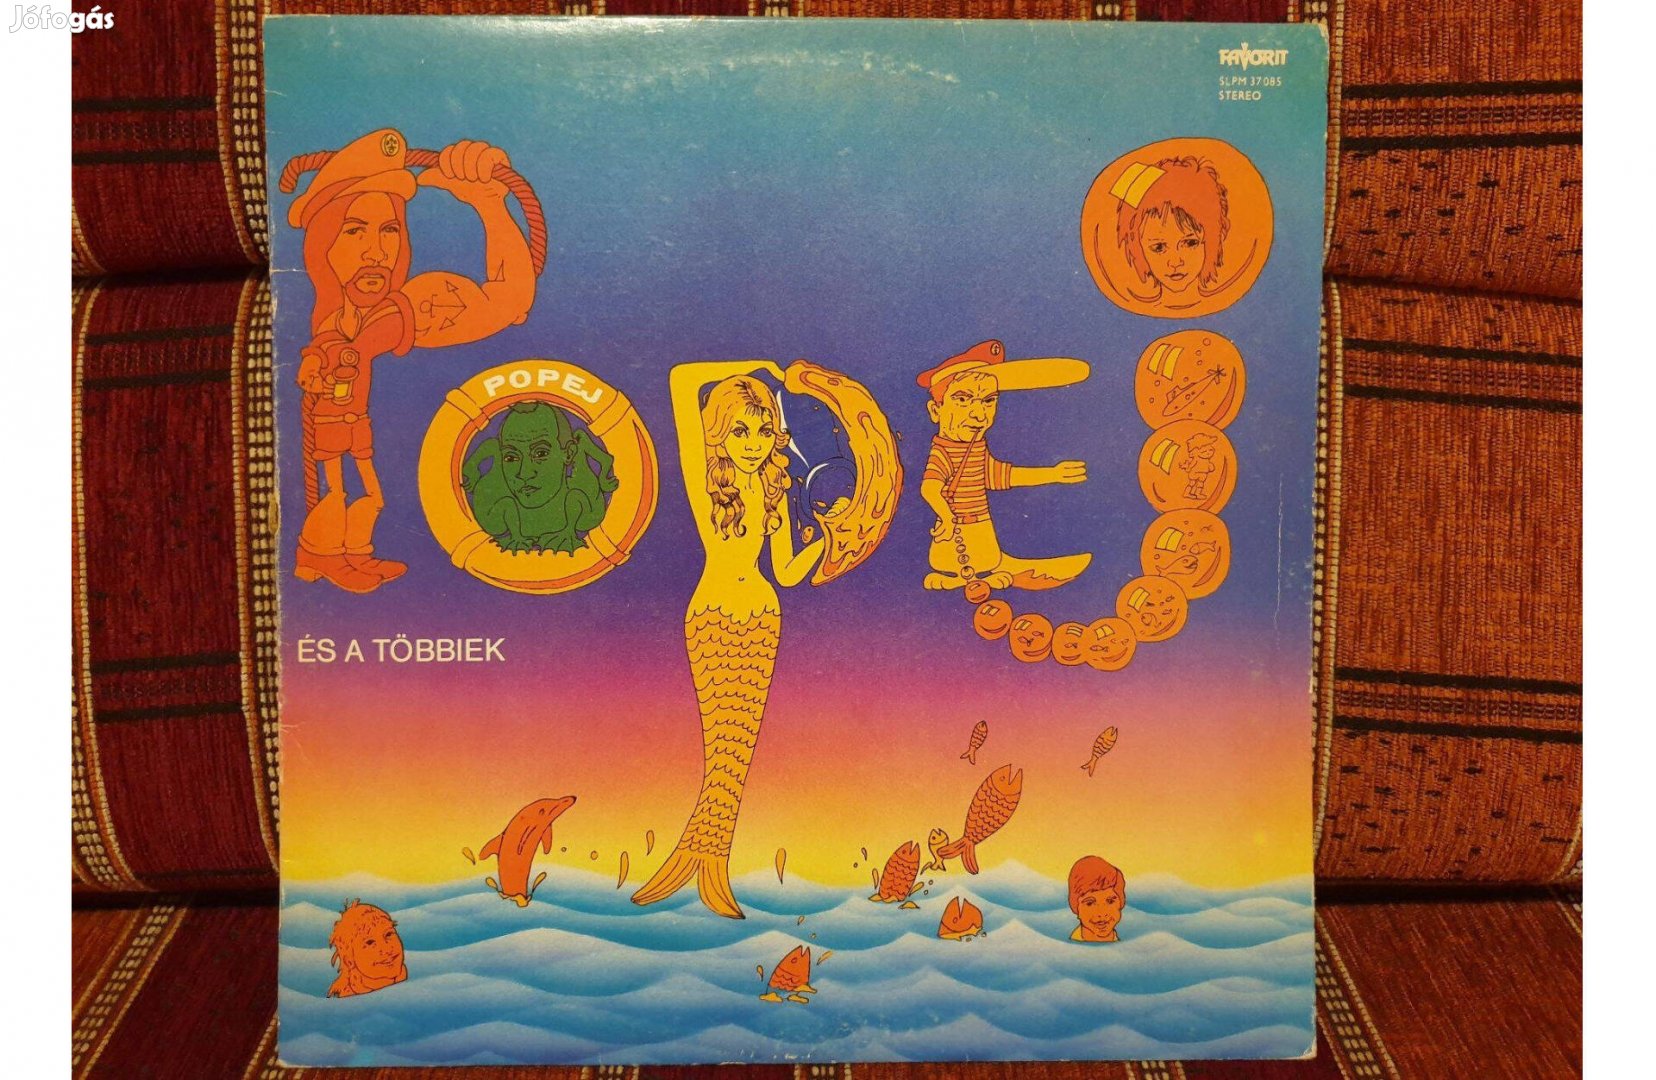 Popej és a többiek hanglemez bakelit lemez Vinyl